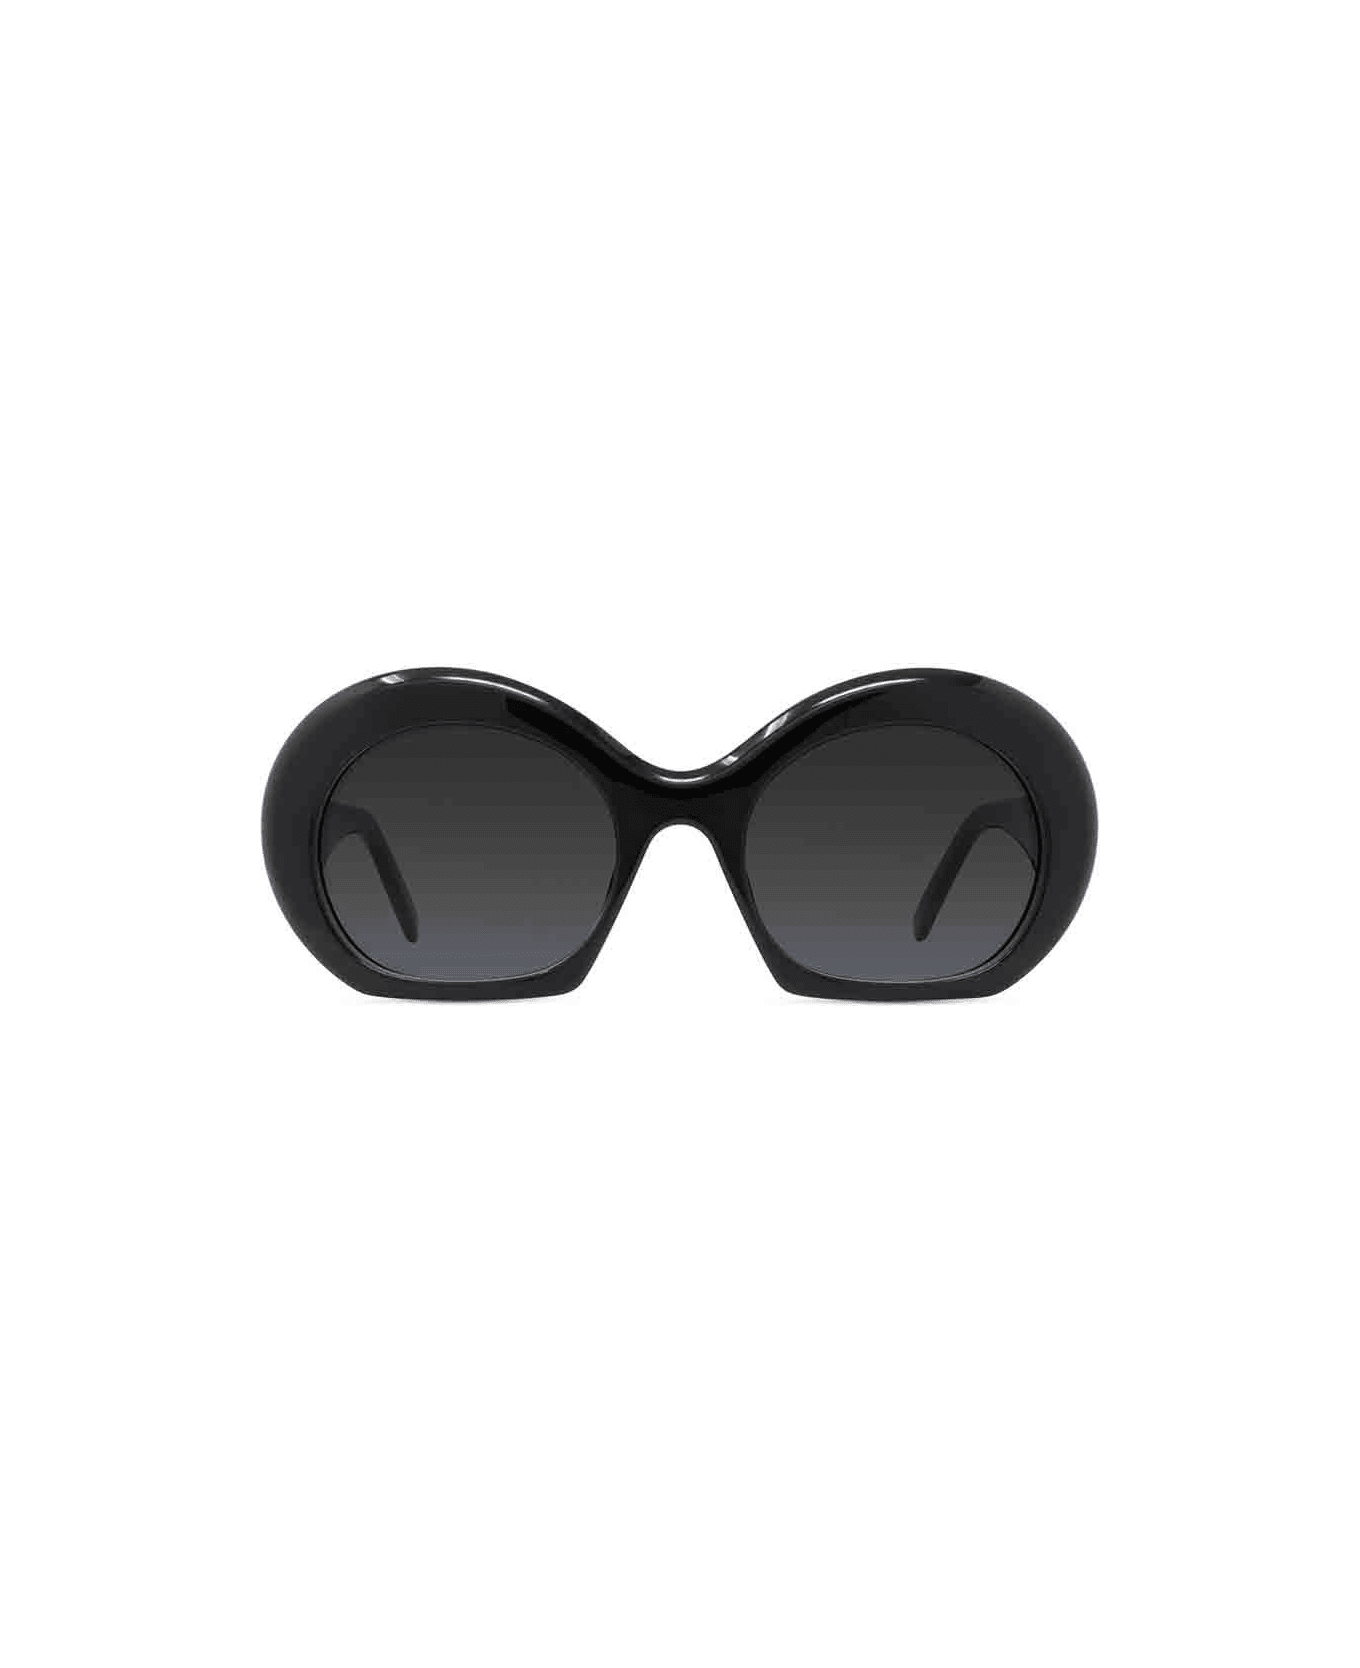 Loewe Sunglasses - Nero/Nero